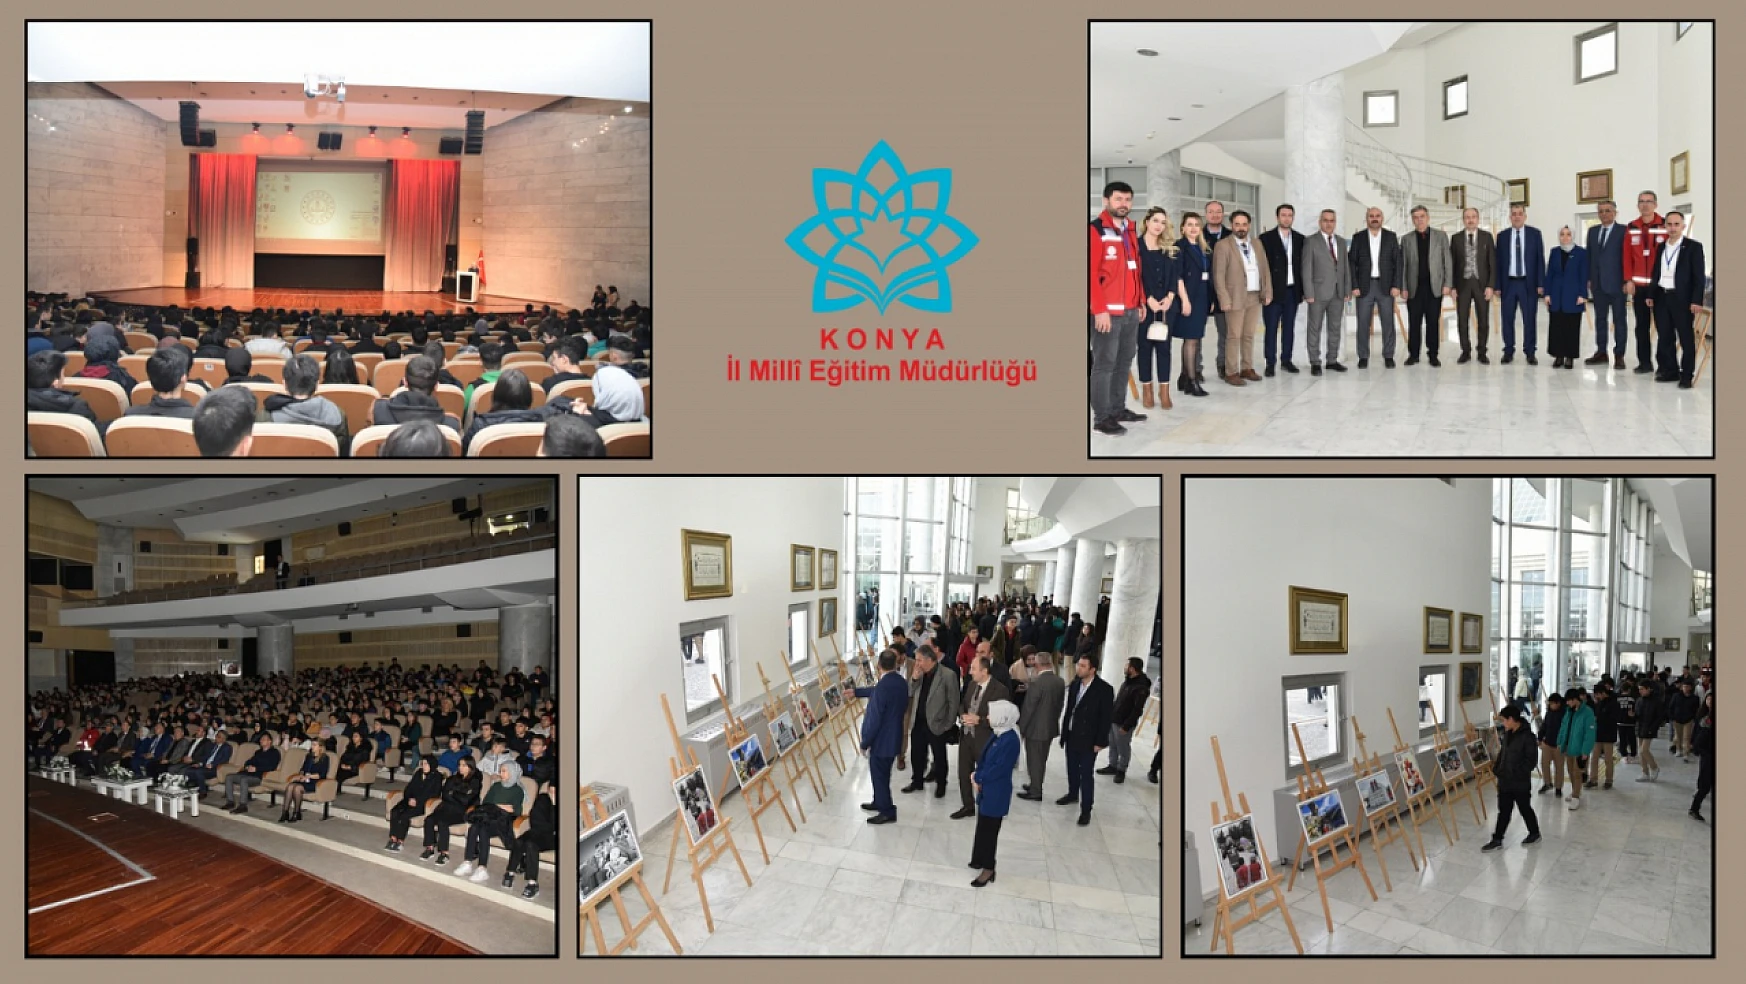 Konya İl Milli Eğitim Müdürlüğünden konferans ve resim sergisi!